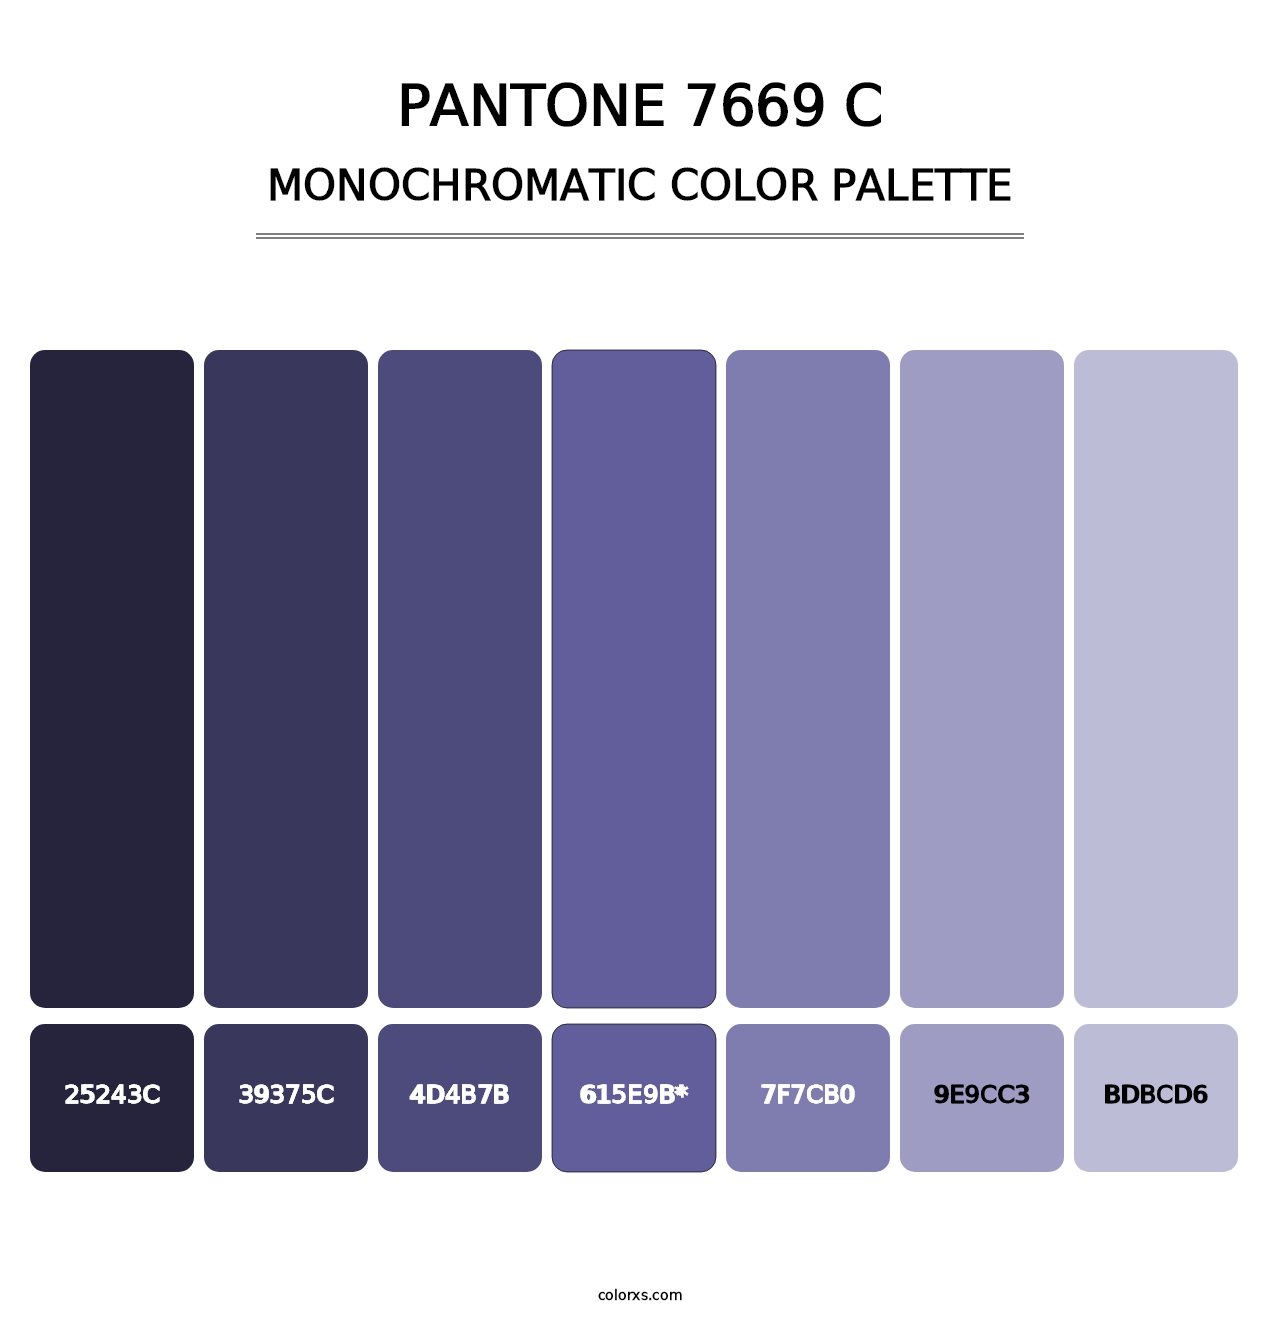 PANTONE 7669 C - Monochromatic Color Palette